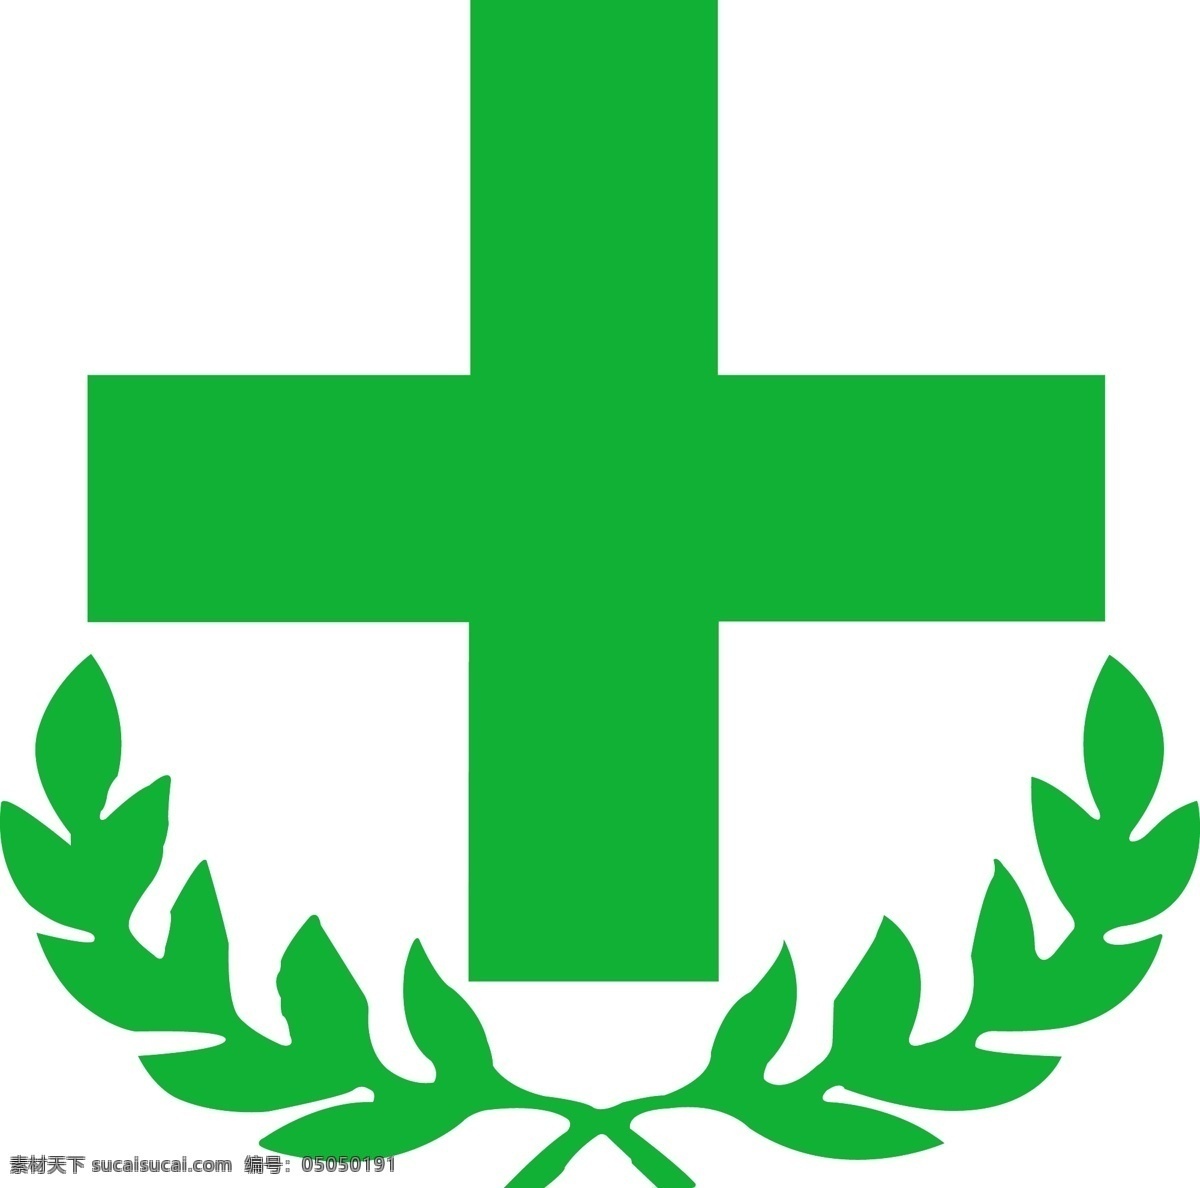 药房logo 医院 药店 标志 药房 绿 logo 路径 标志图标 公共标识标志